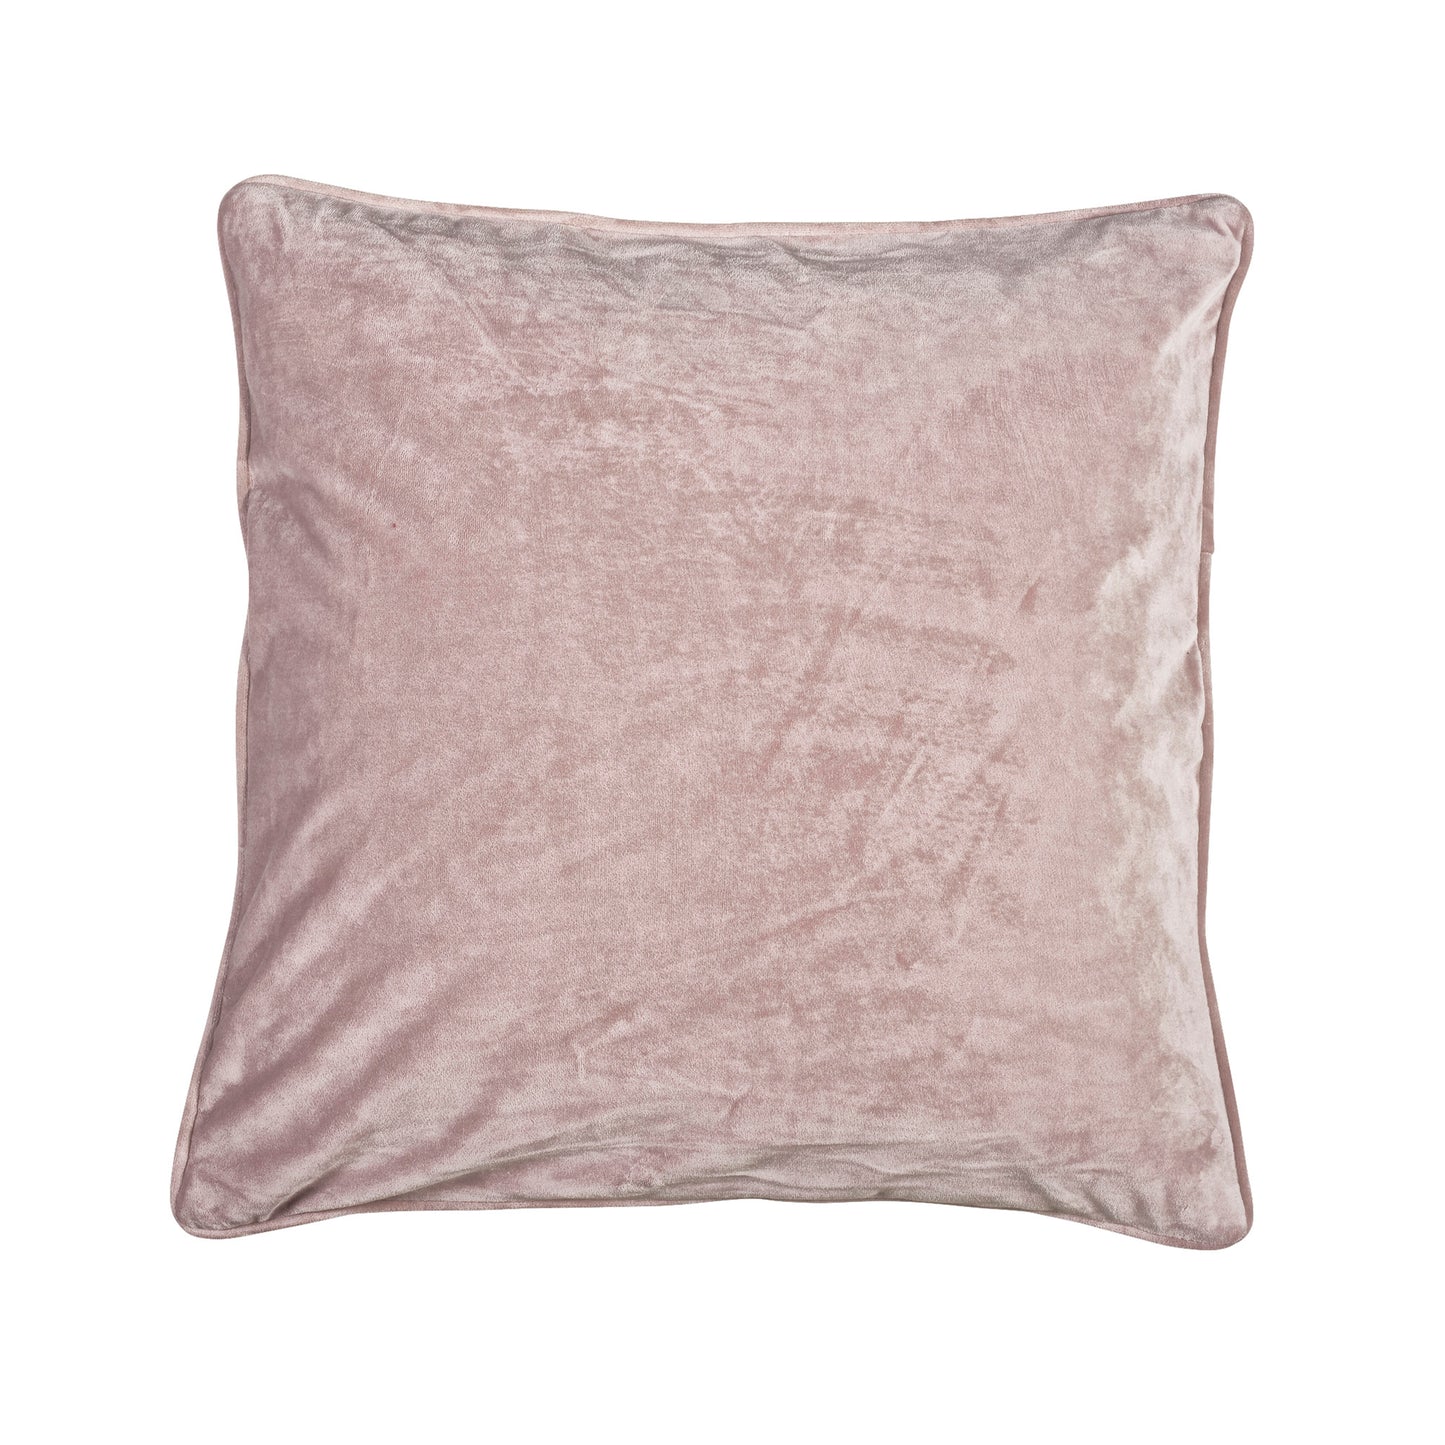 Fondaco VELVET Cushion cover in Pink Velour, 45x45 cm